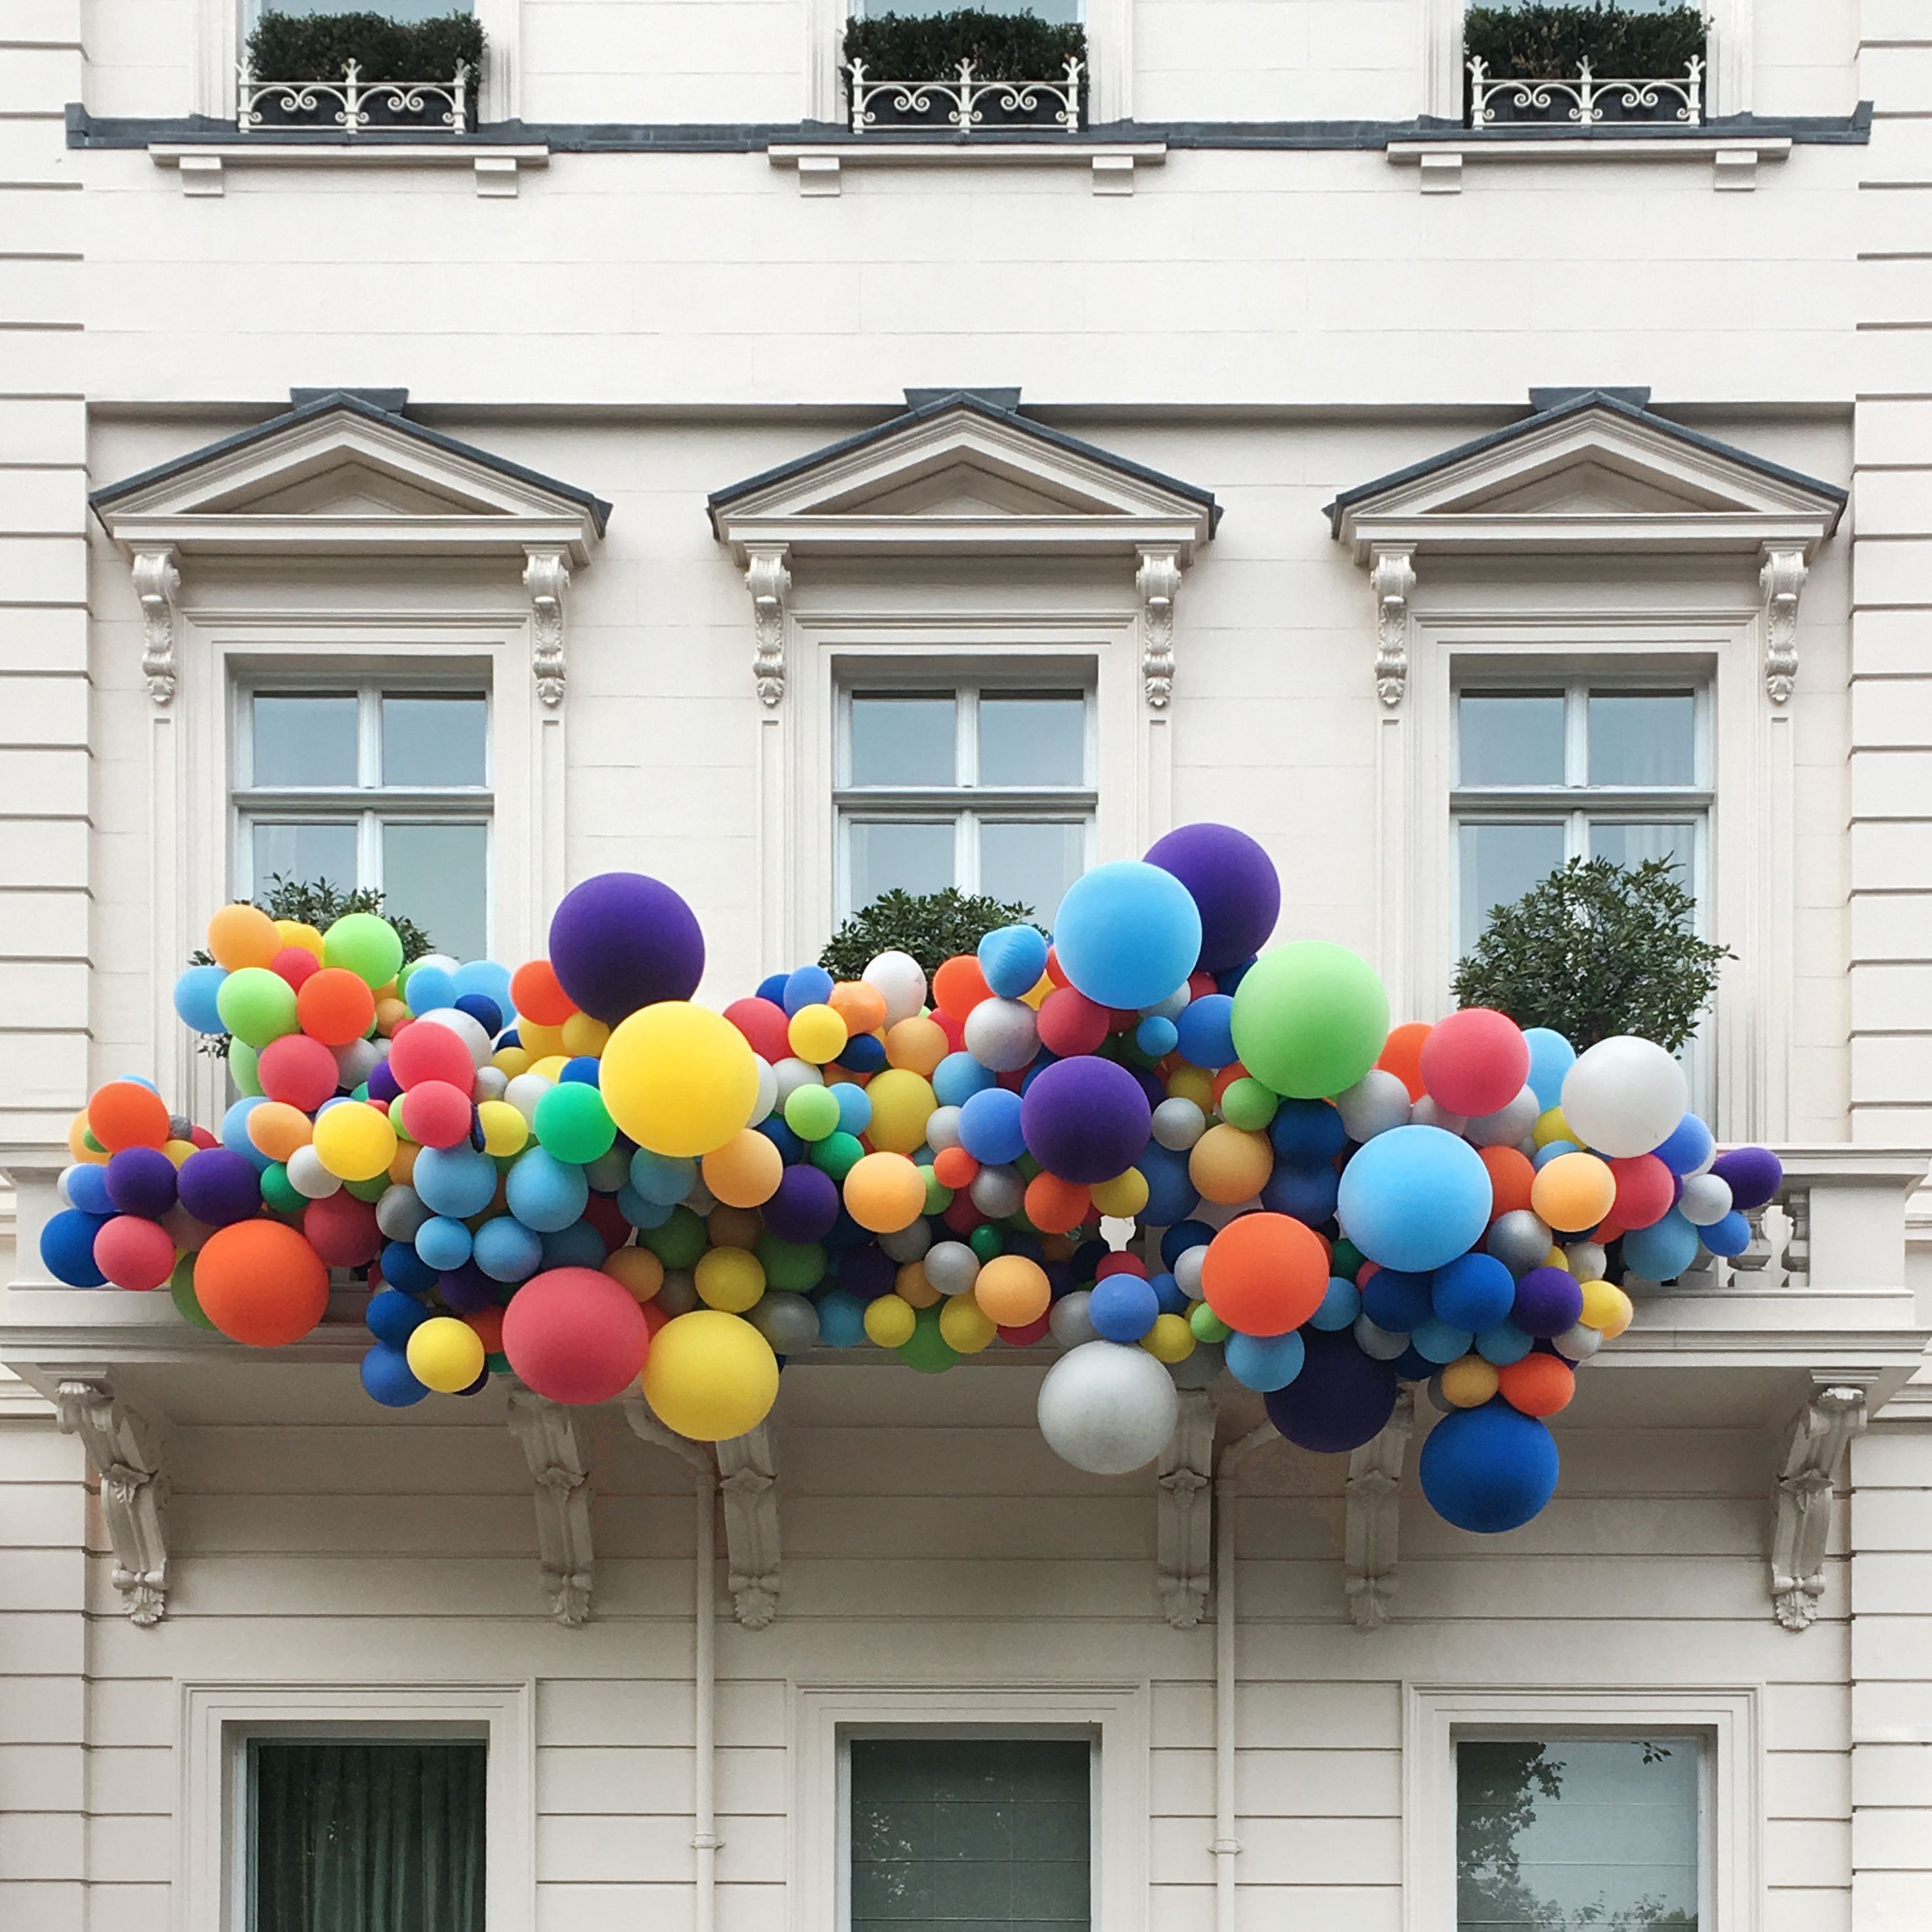 Купить дом шарами. Гирлянда из шаров. Гирлянда из шаров на фасад. Украшение фасада шарами. Украшение окон воздушными шарами.